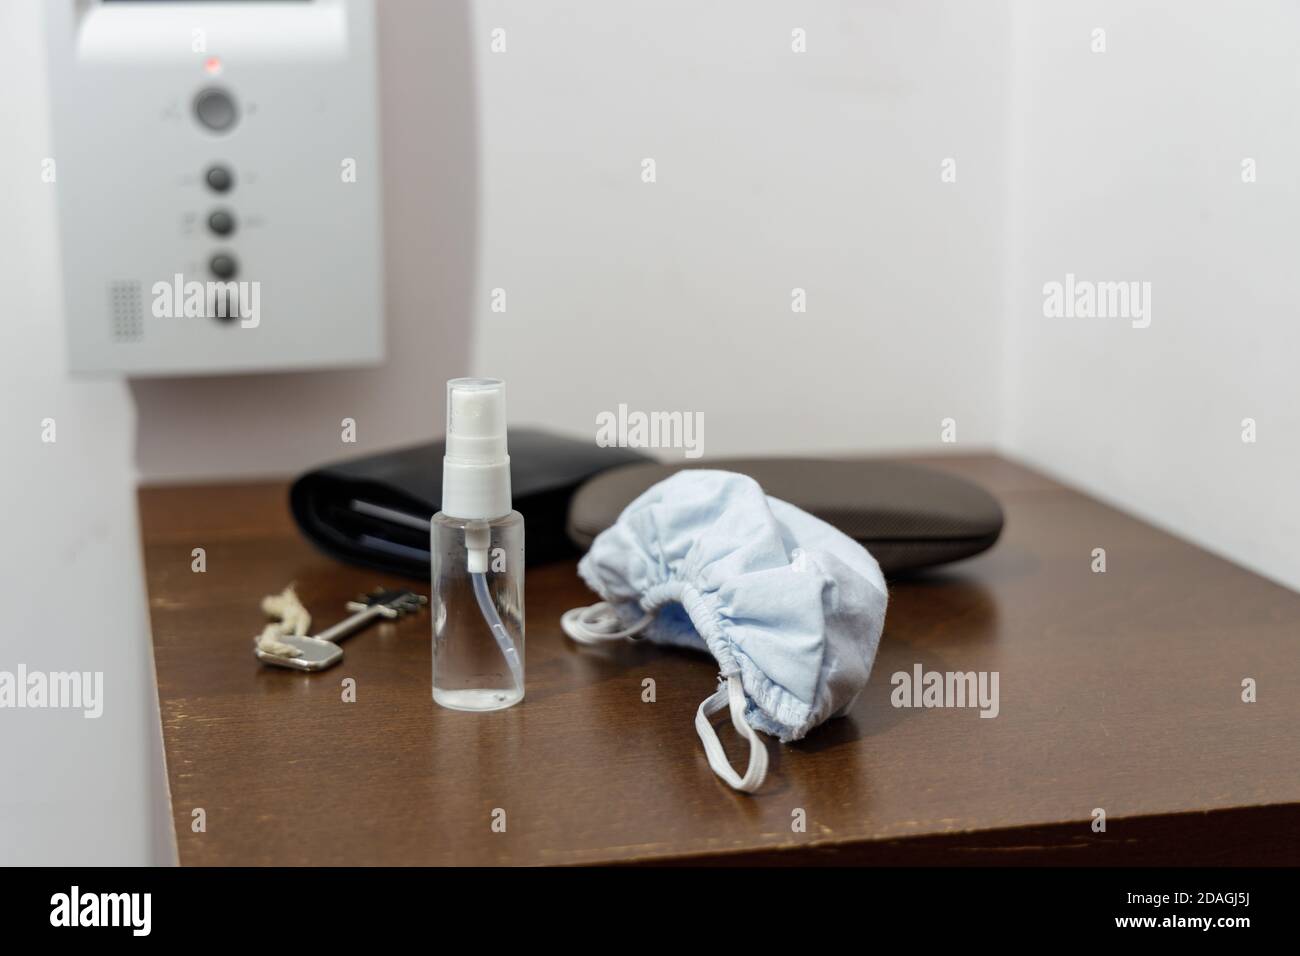 Preparación para una pandemia antes de salir de casa: Mascarilla facial y desinfectante en una pequeña y práctica botella Foto de stock